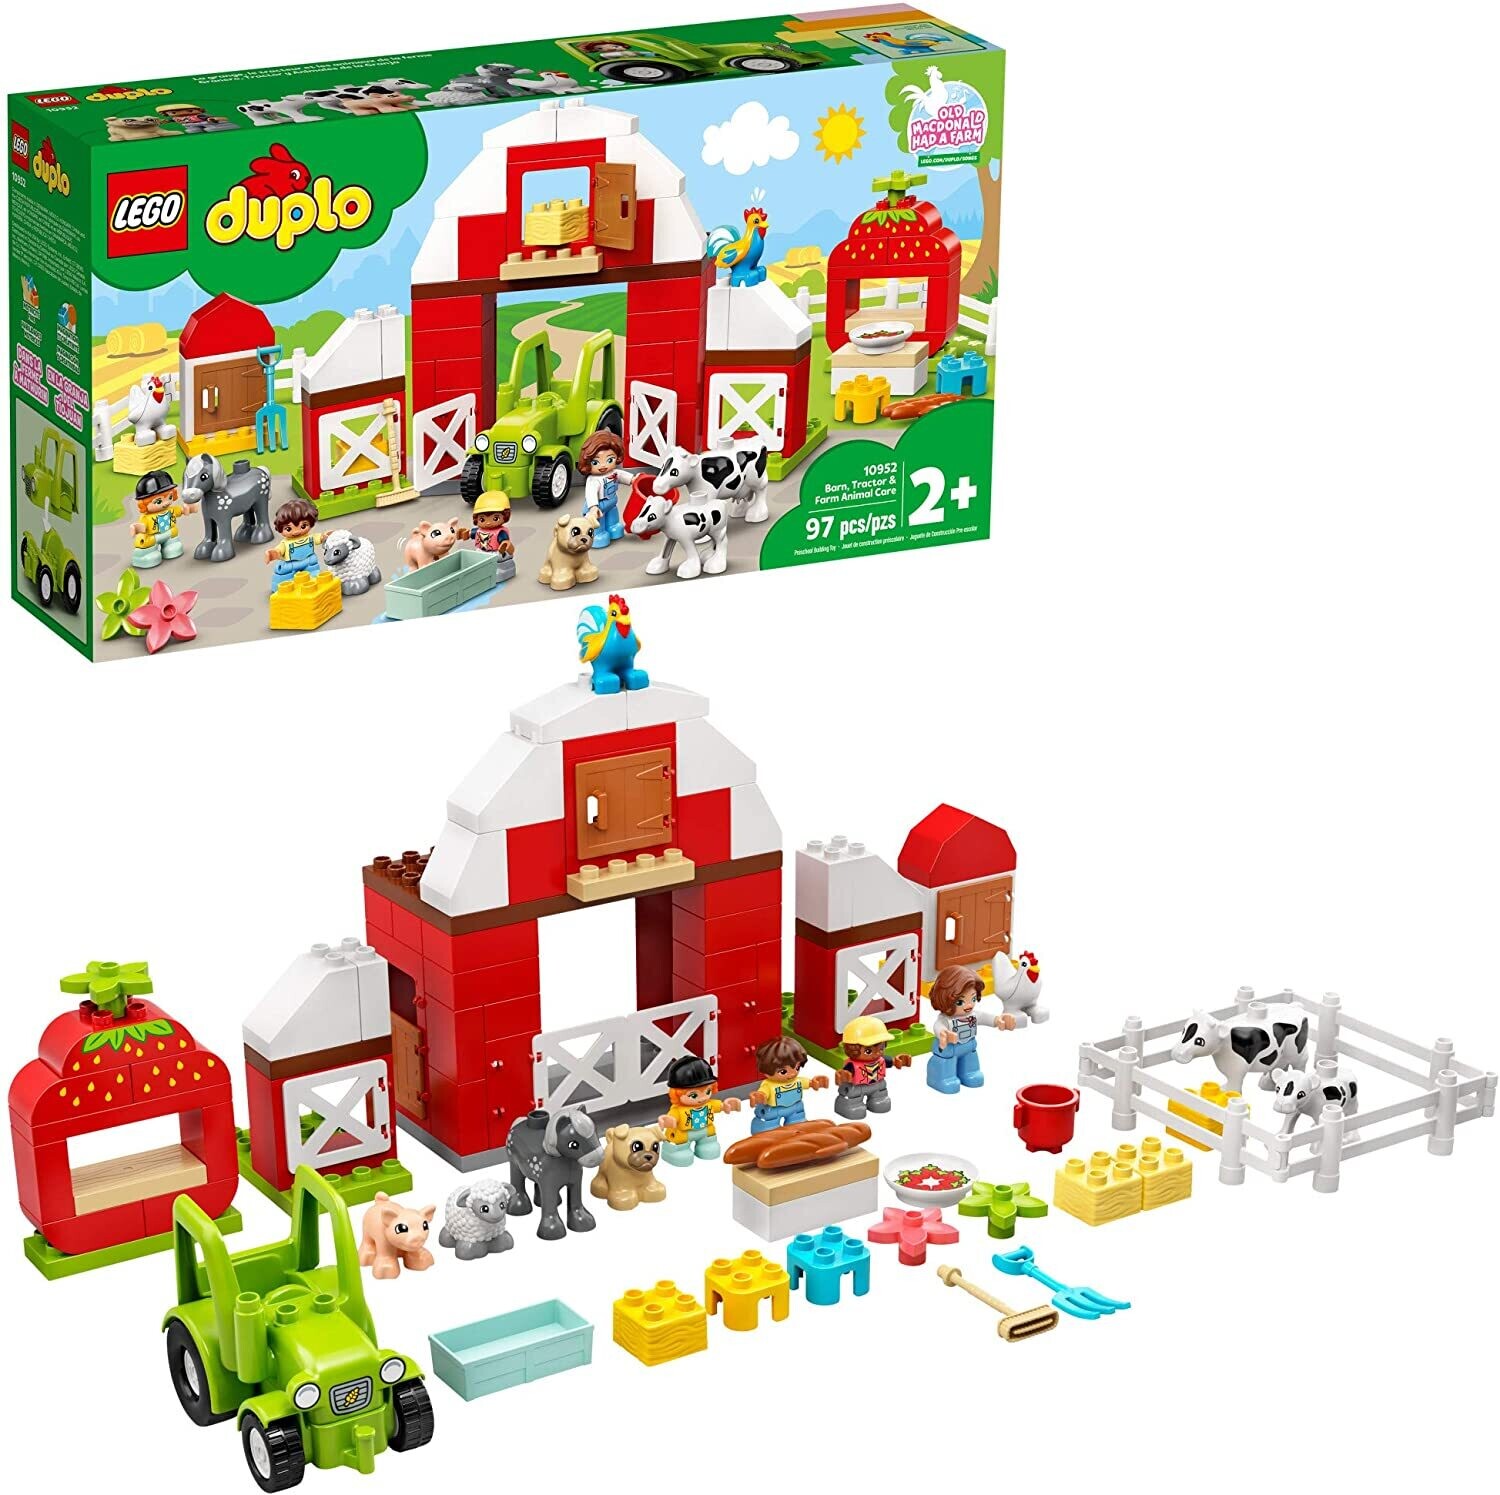 Lego Duplo 10952 Barn, Tractor, & Farm Care